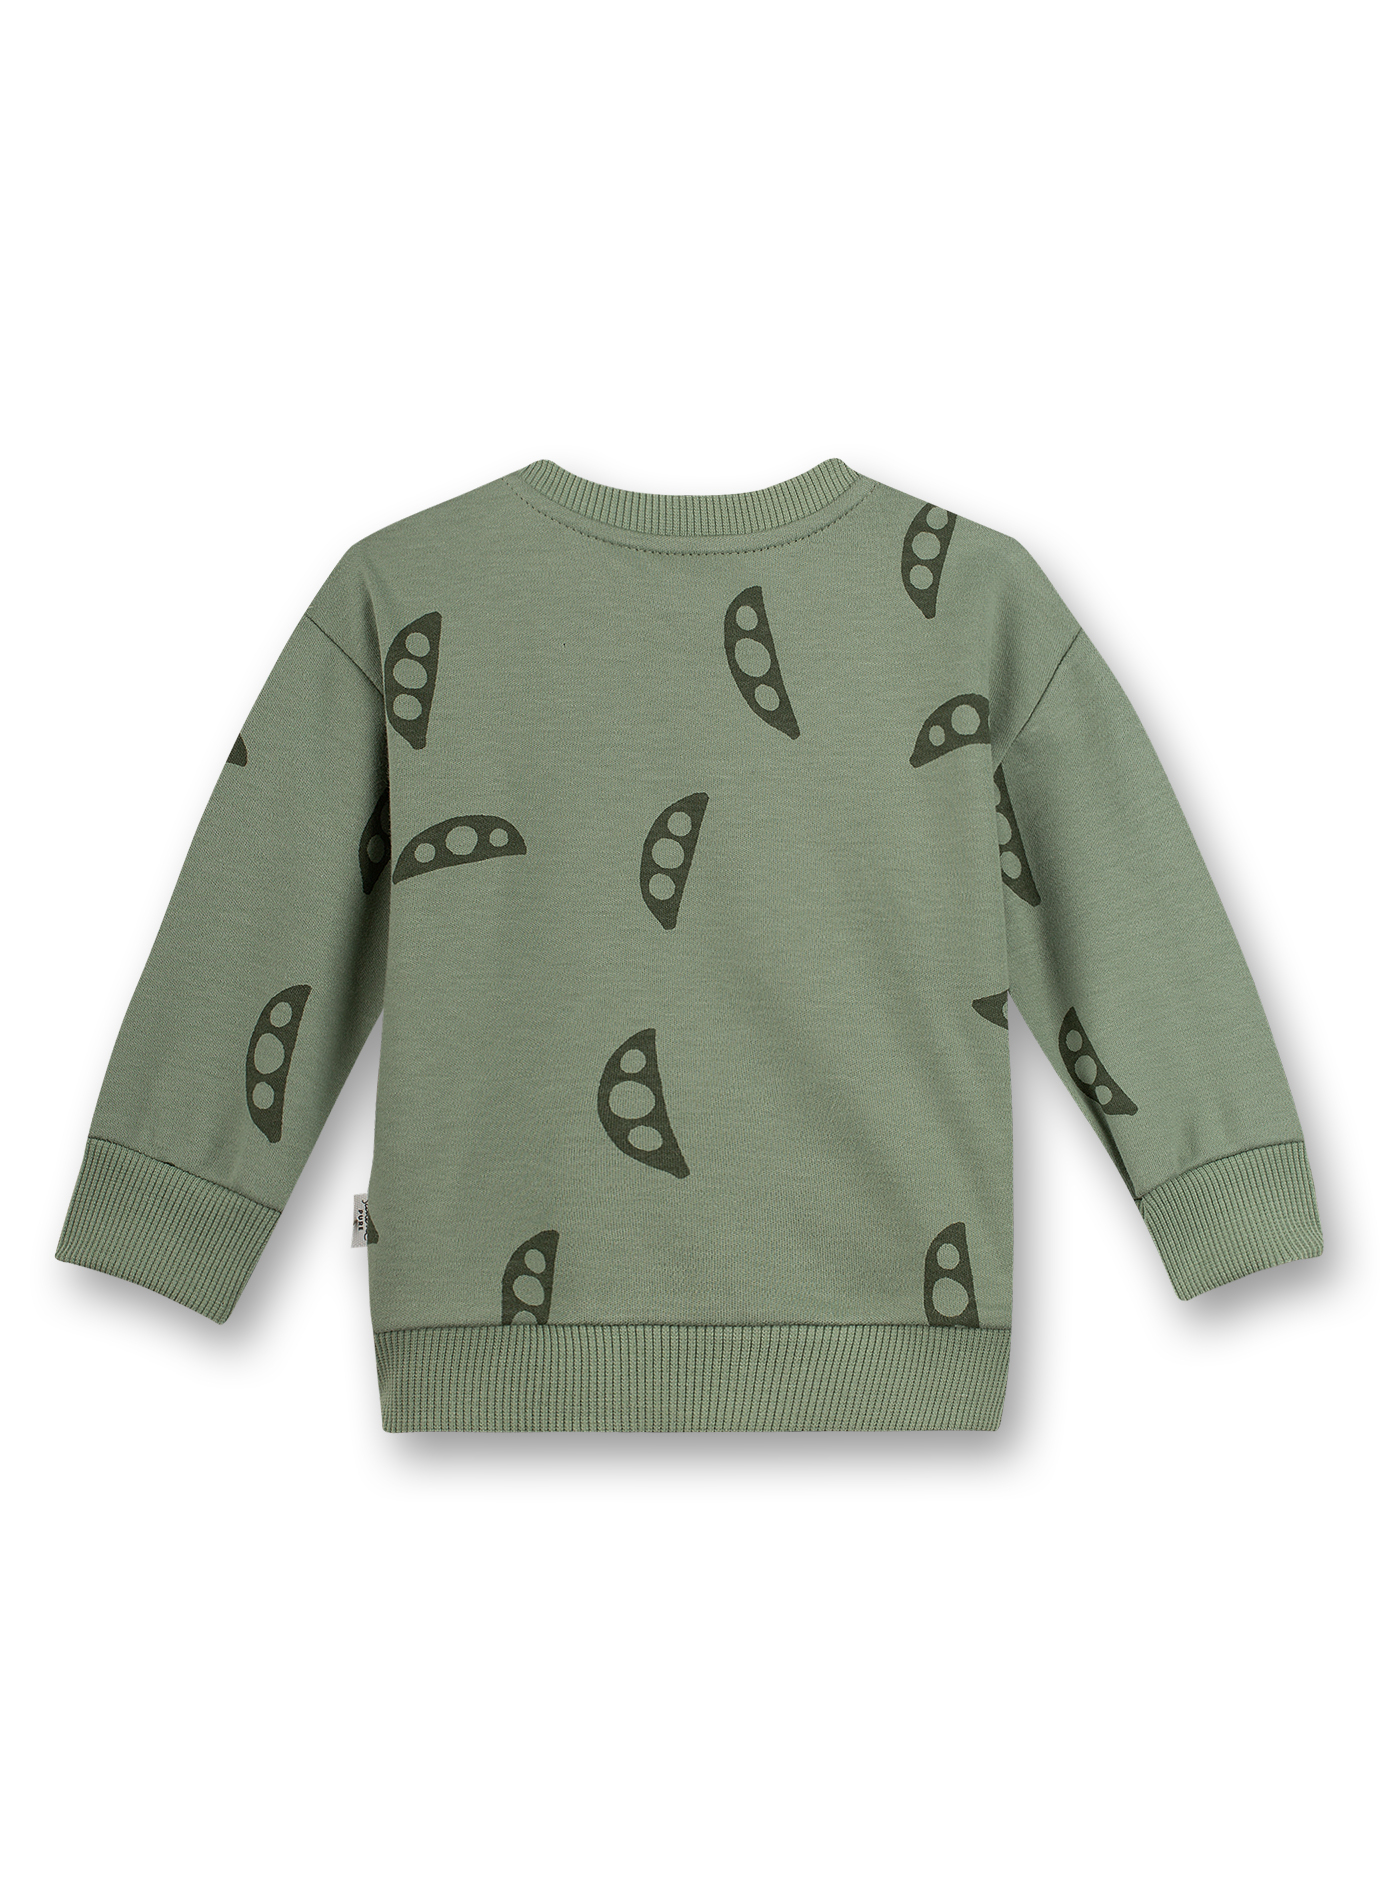 Jungen-Sweatshirt Grün